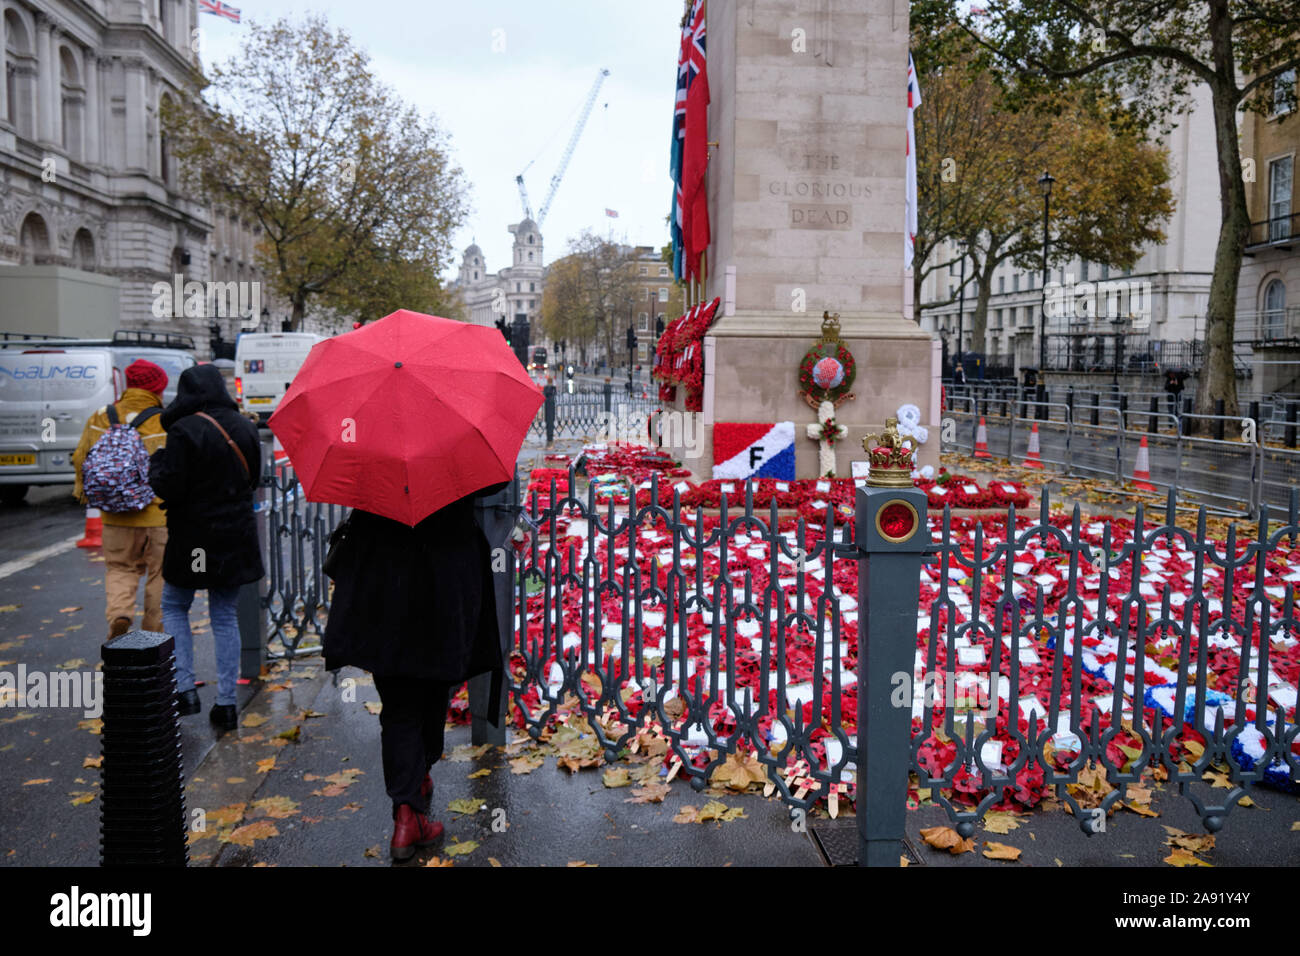 Westminster, Londra, Regno Unito. 12 Nov 2019. In un pomeriggio piovoso a Londra, la gente viene a rendere omaggio agli eroi caduti al Cenotaph, dove le corone sono ancora raccolte dalle cerimonie del fine settimana. Foto Stock